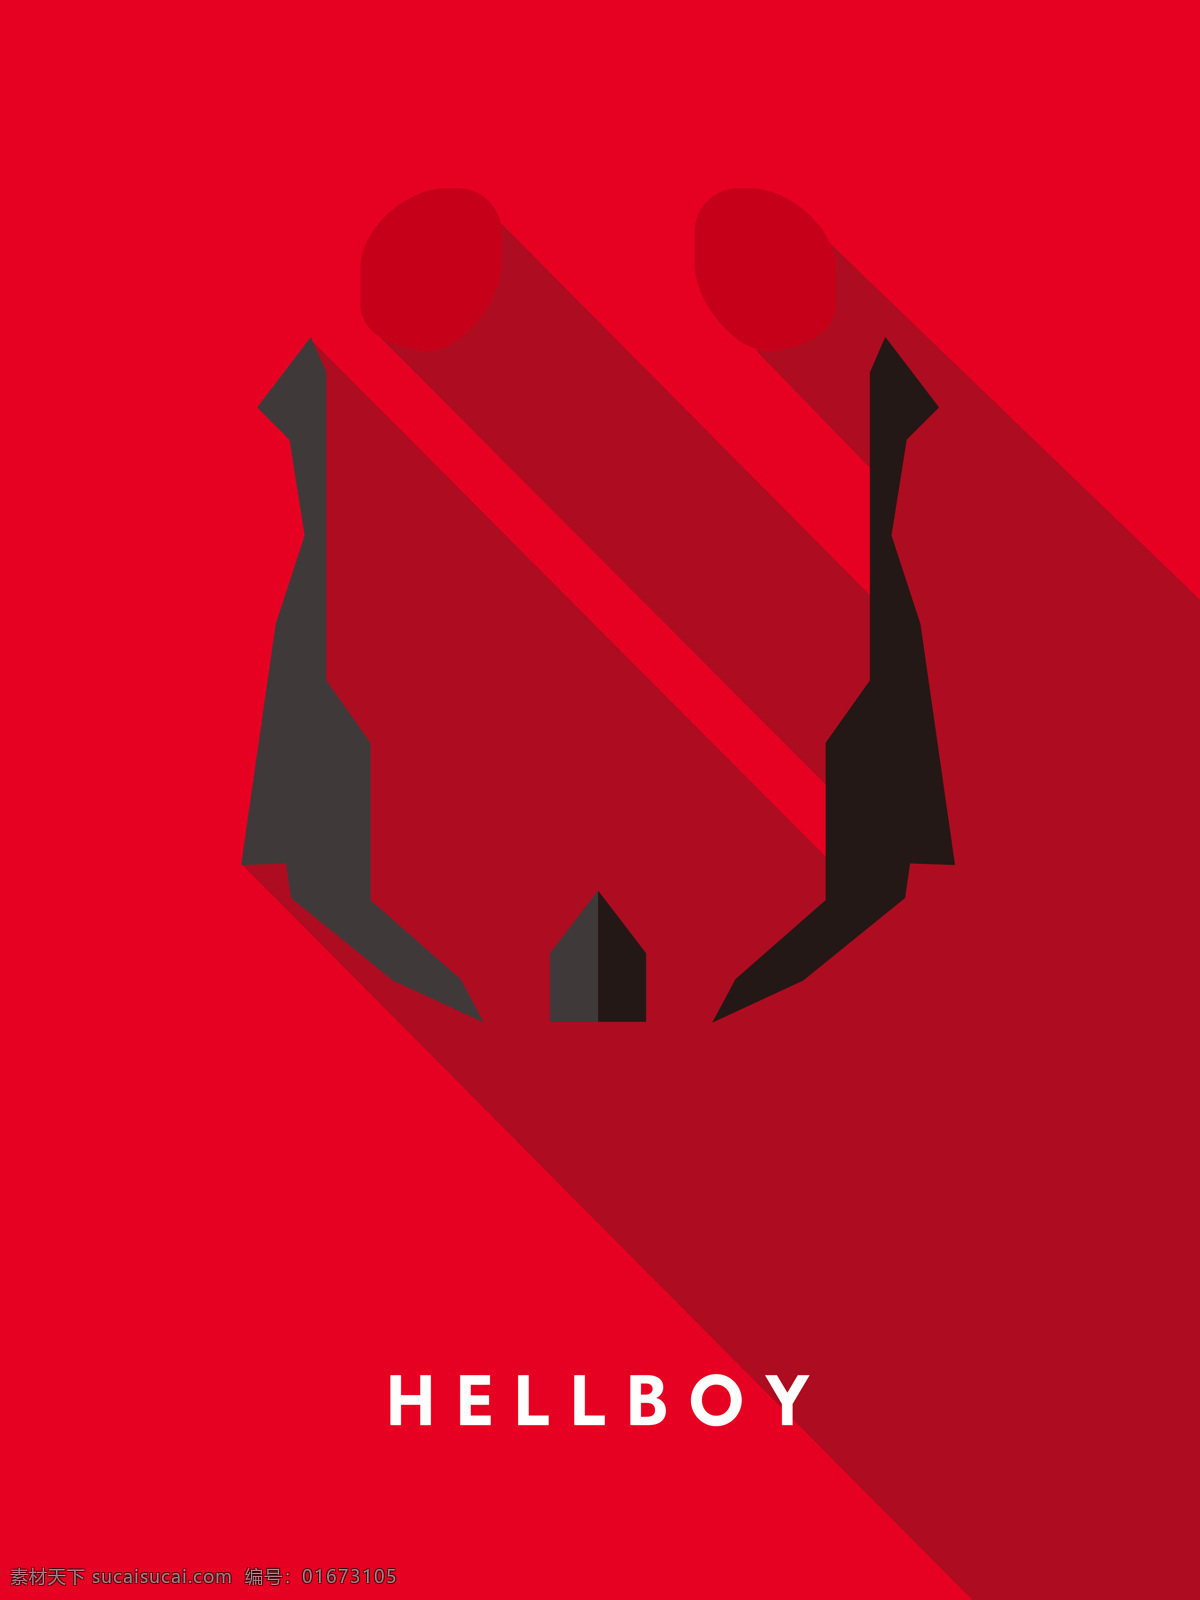 地狱男爵 hellboy 超级英雄 漫画英雄 装饰画 高清素材 文化艺术 影视娱乐